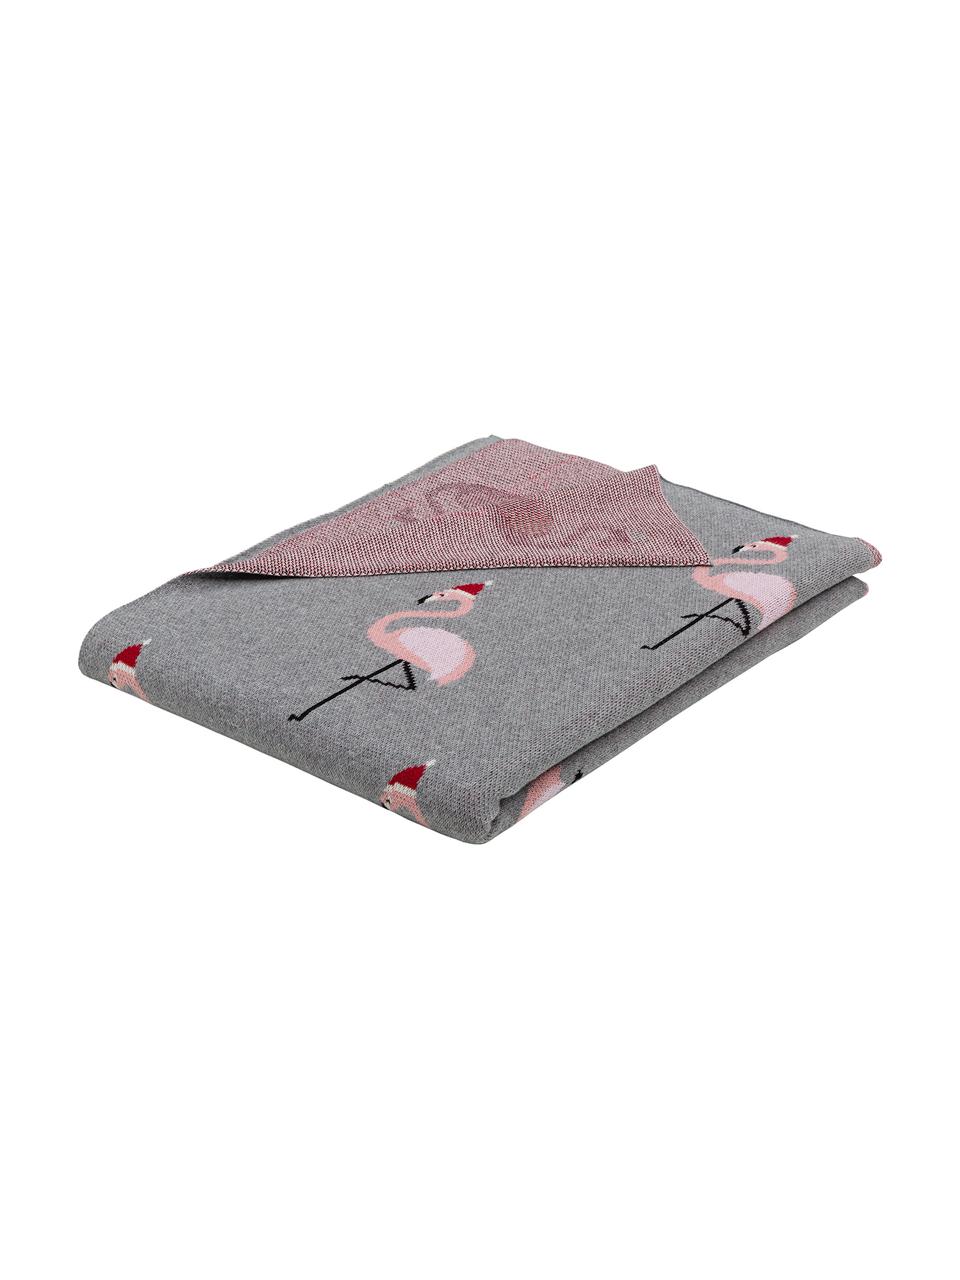 Manta doble cara tejida Flamingo, 100% algodón, Gris, multicolor, An 150 x L 200 cm